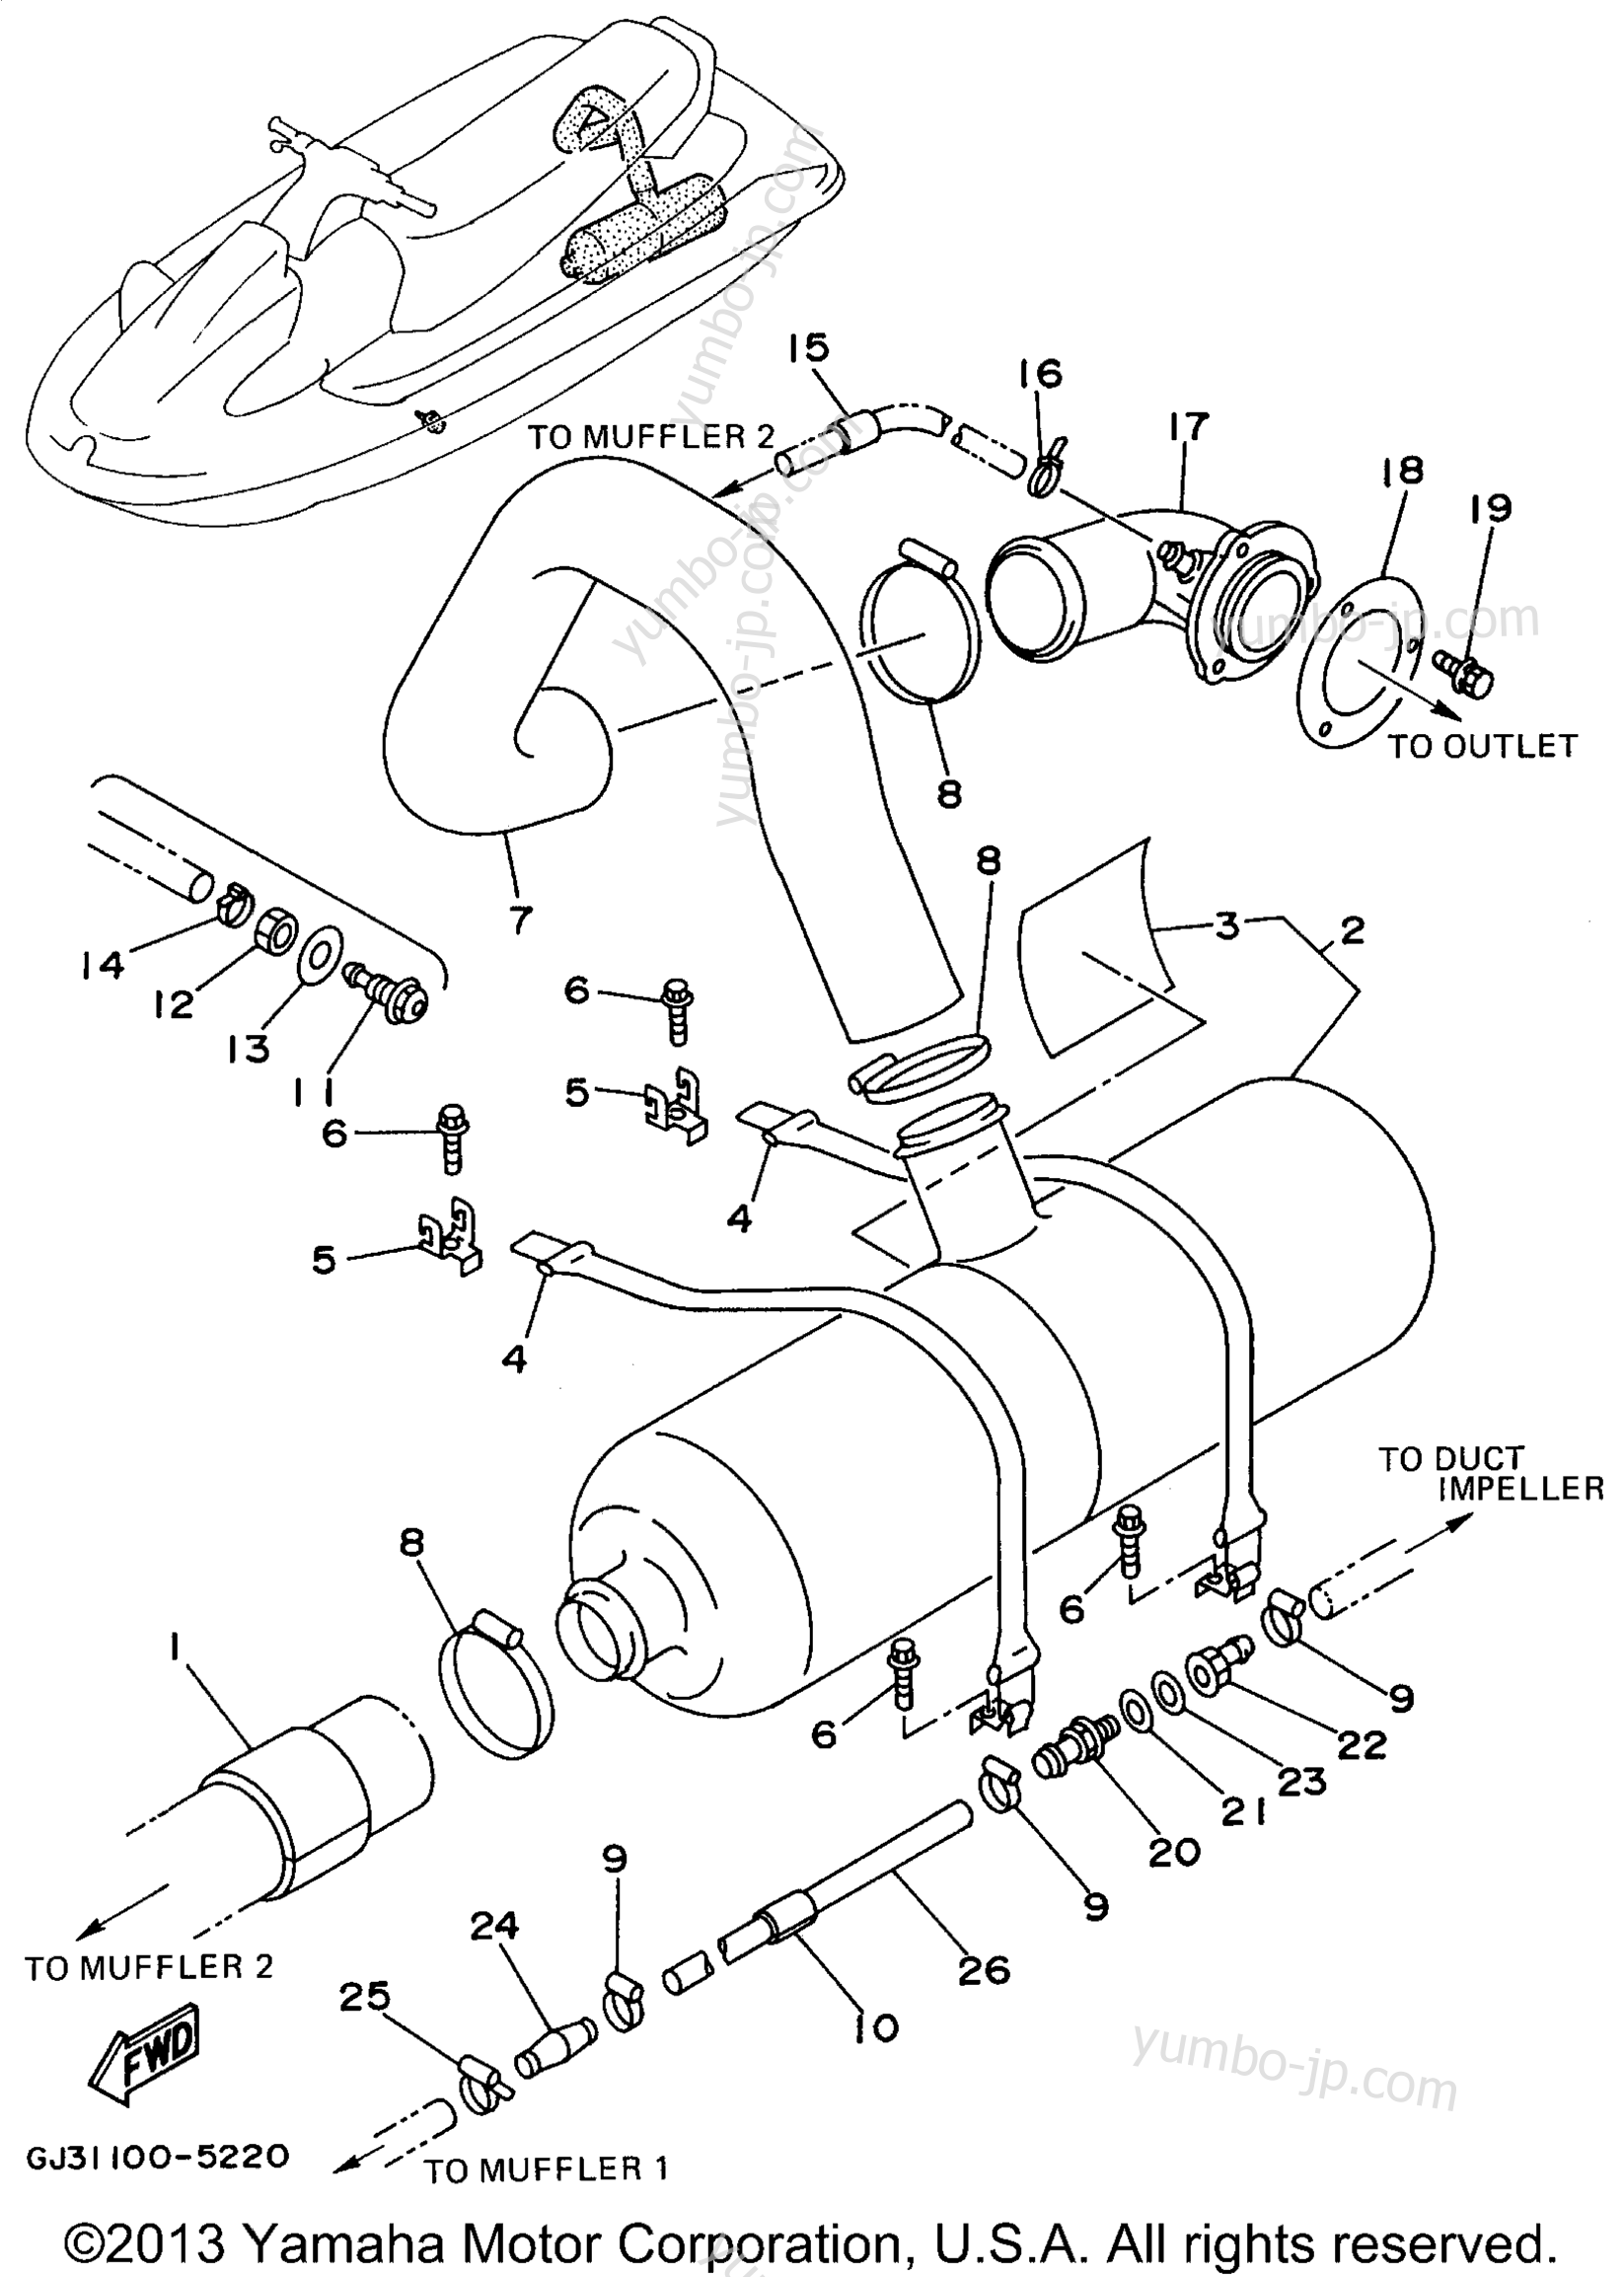 Exhaust 2 для гидроциклов YAMAHA WAVE VENTURE (WVT700T) 1995 г.